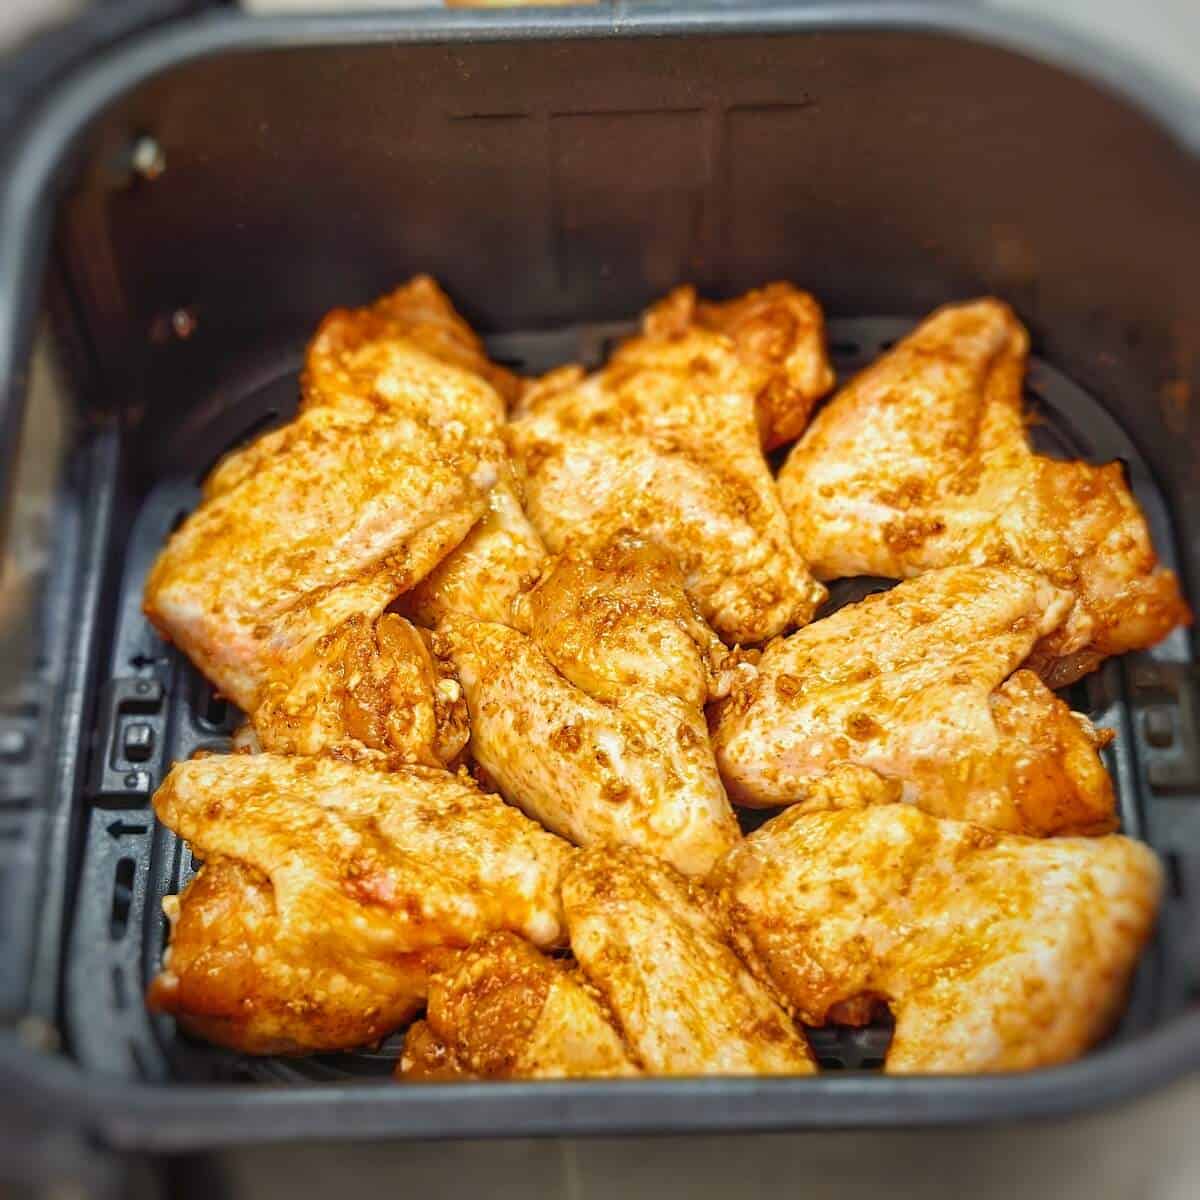 seasoned chicken wings in air fryer basket